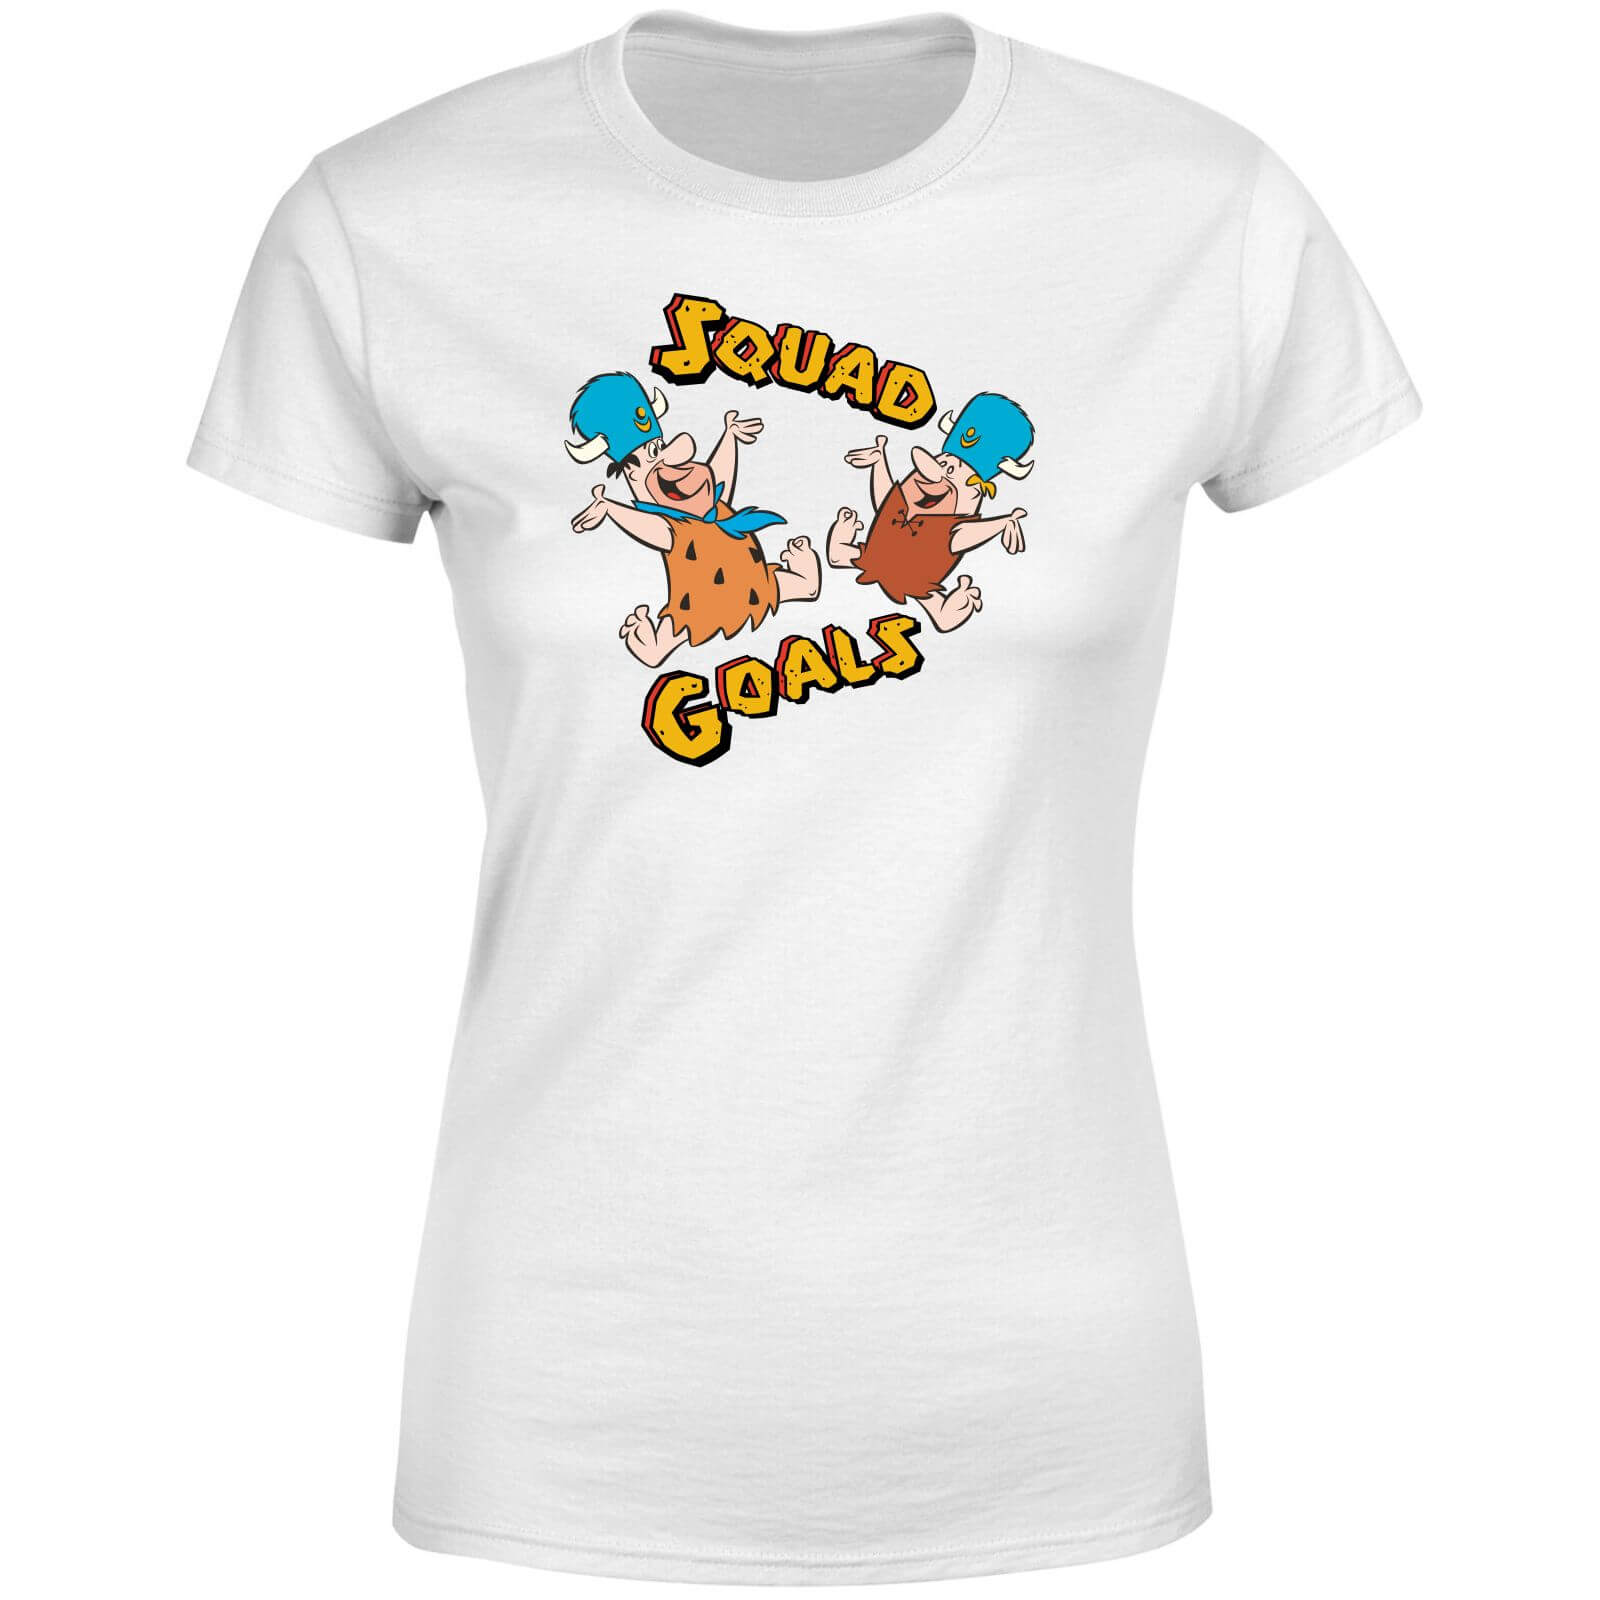 The Flintstones Squad Goals Women's T-Shirt - White - 4XL - White